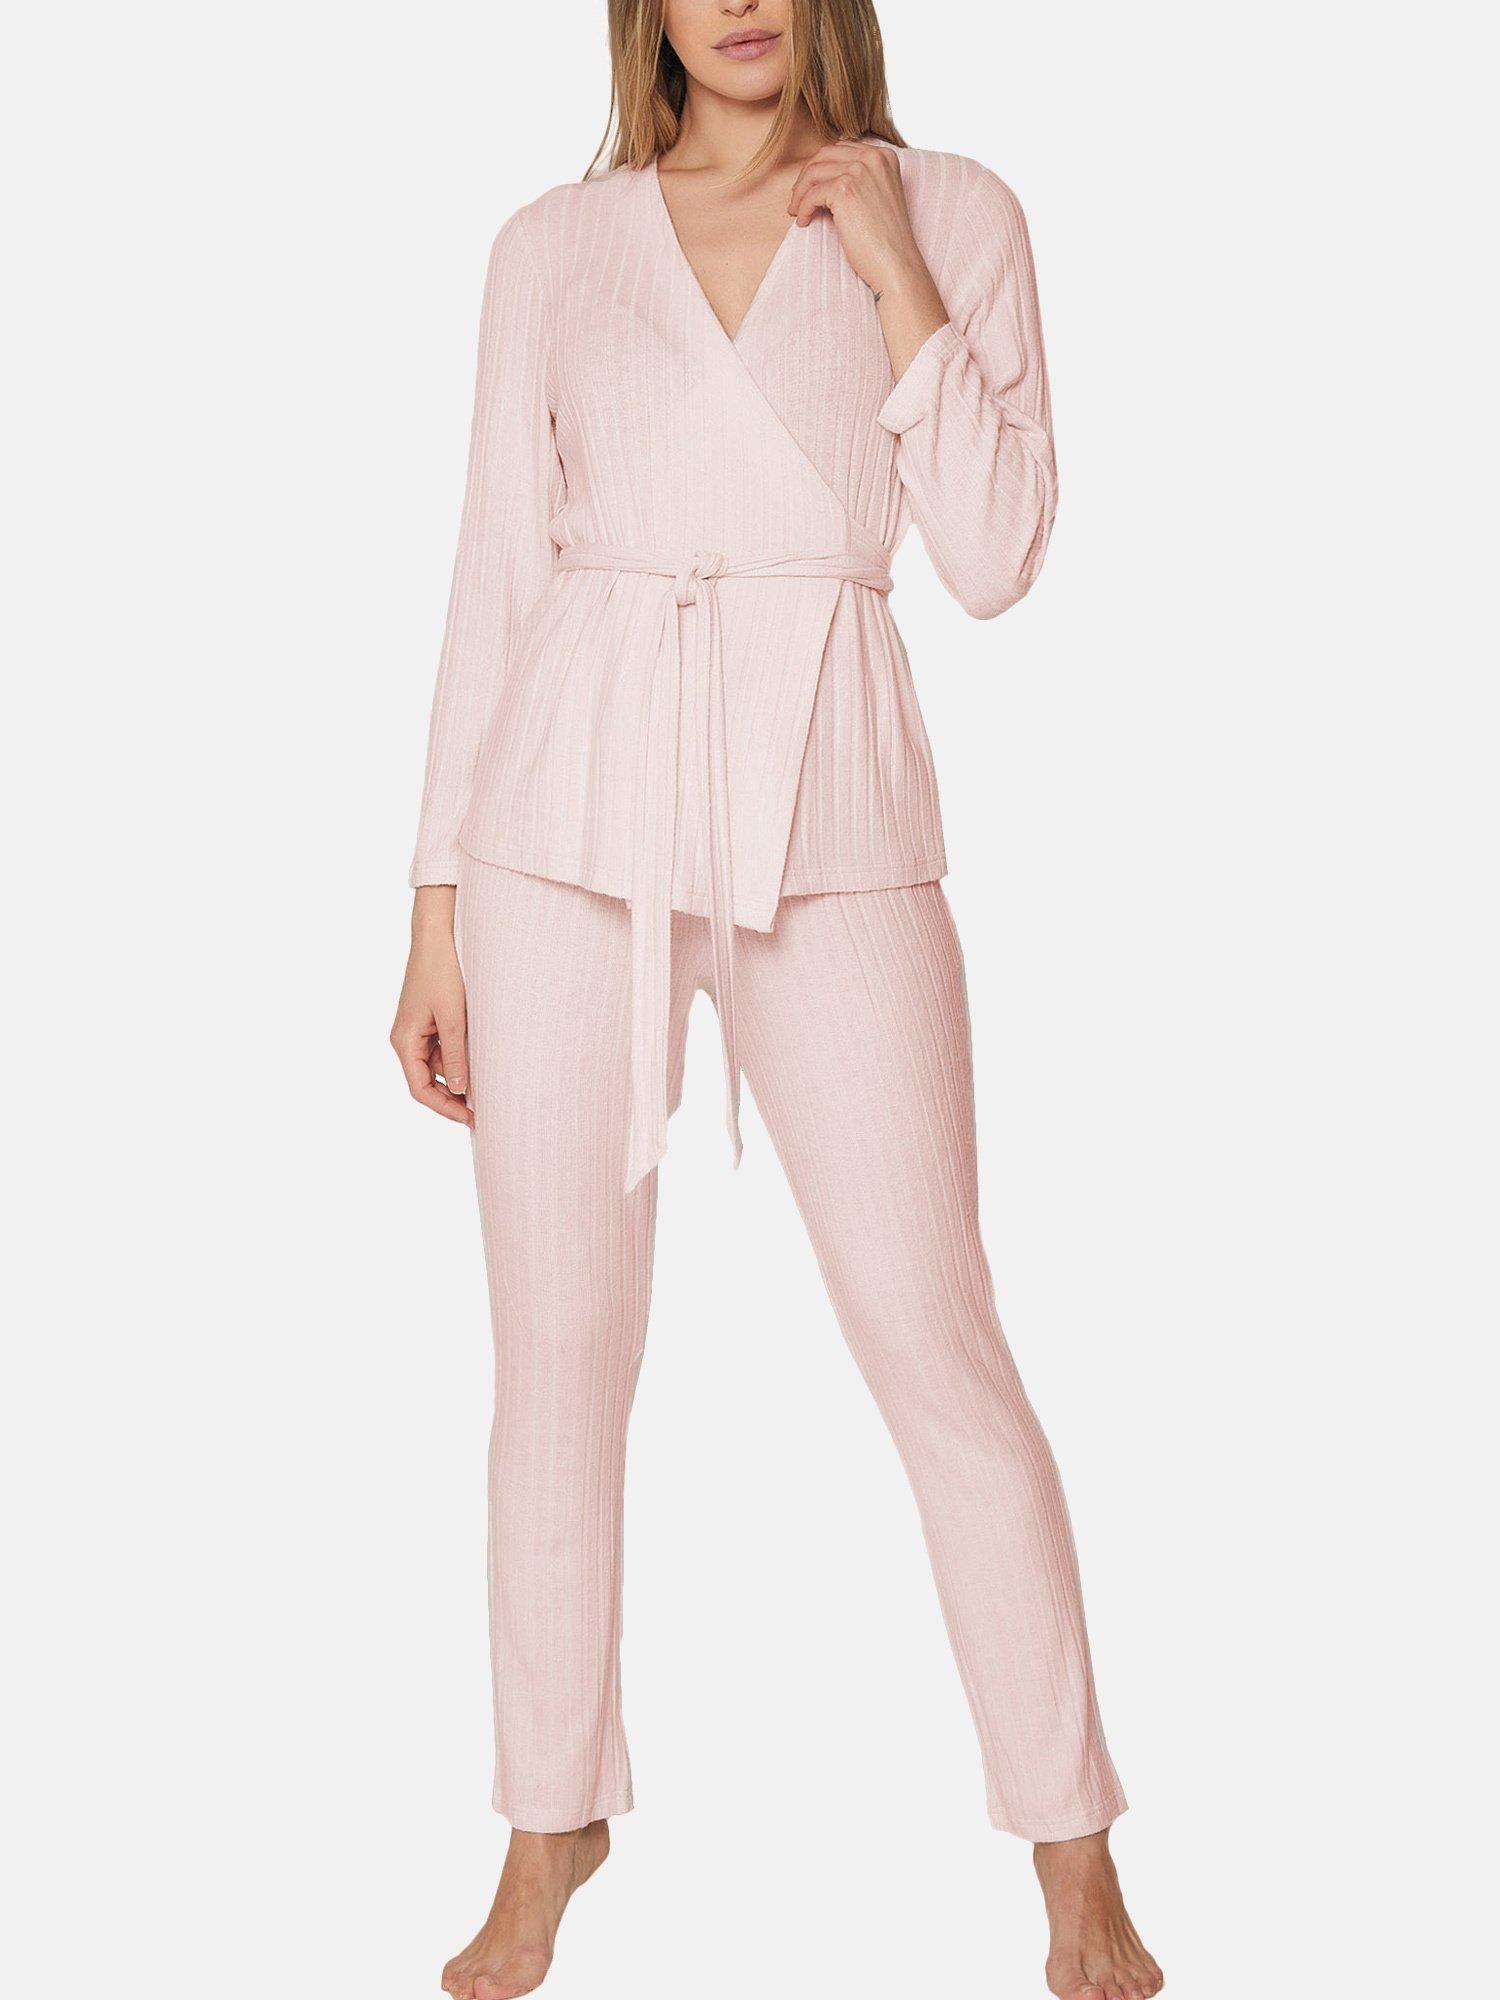 Pyjama Loungewear Hose Oberteil Zweireiher Elegant Line Damen Altrosa XL von Admas